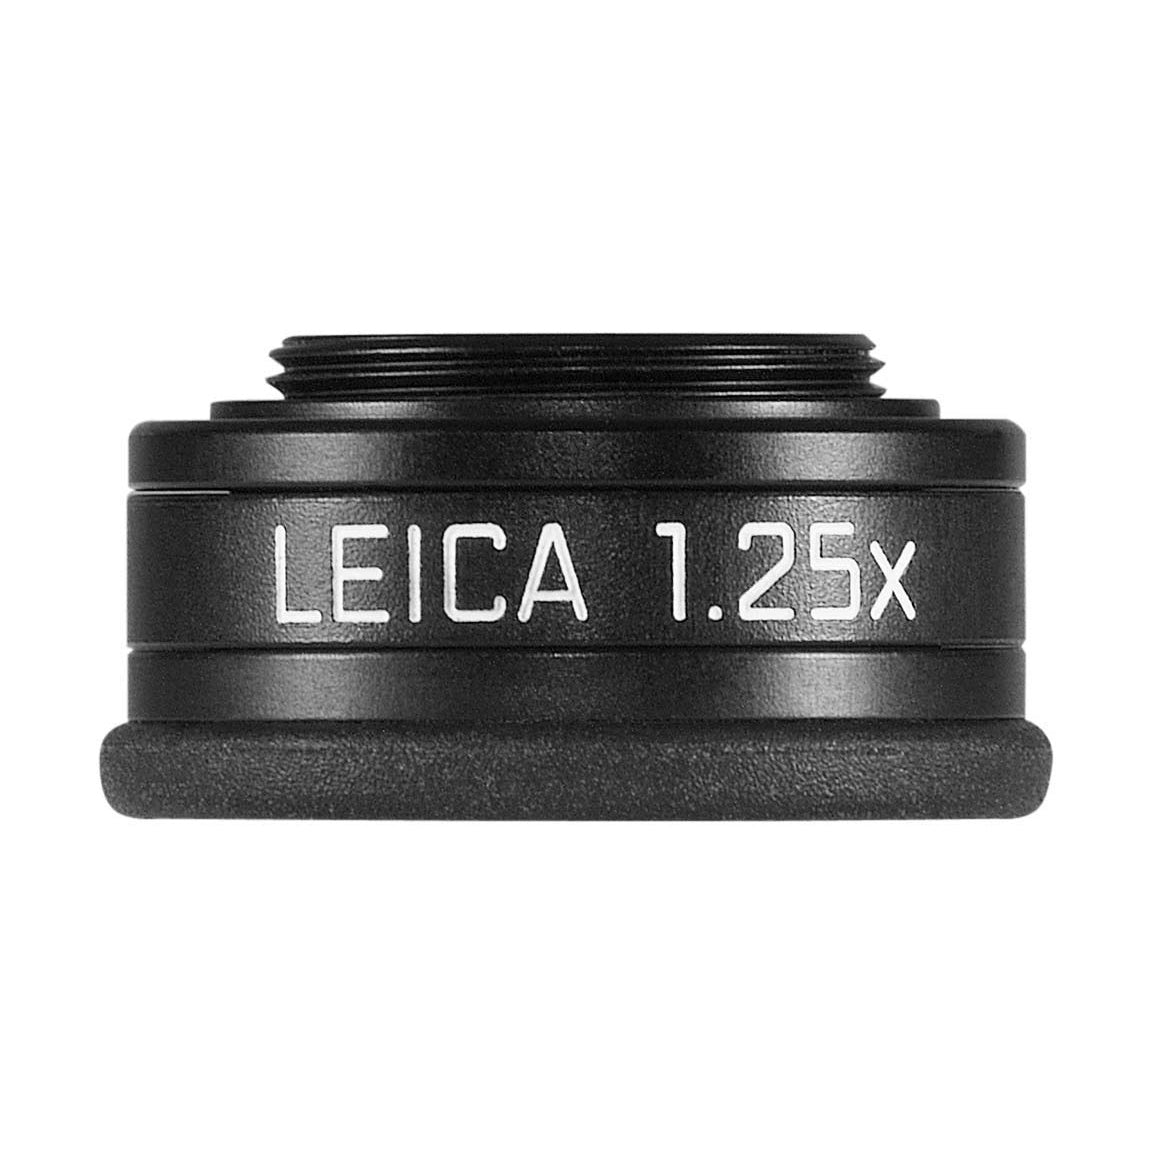 Leica Sucherlupe M 1.25x